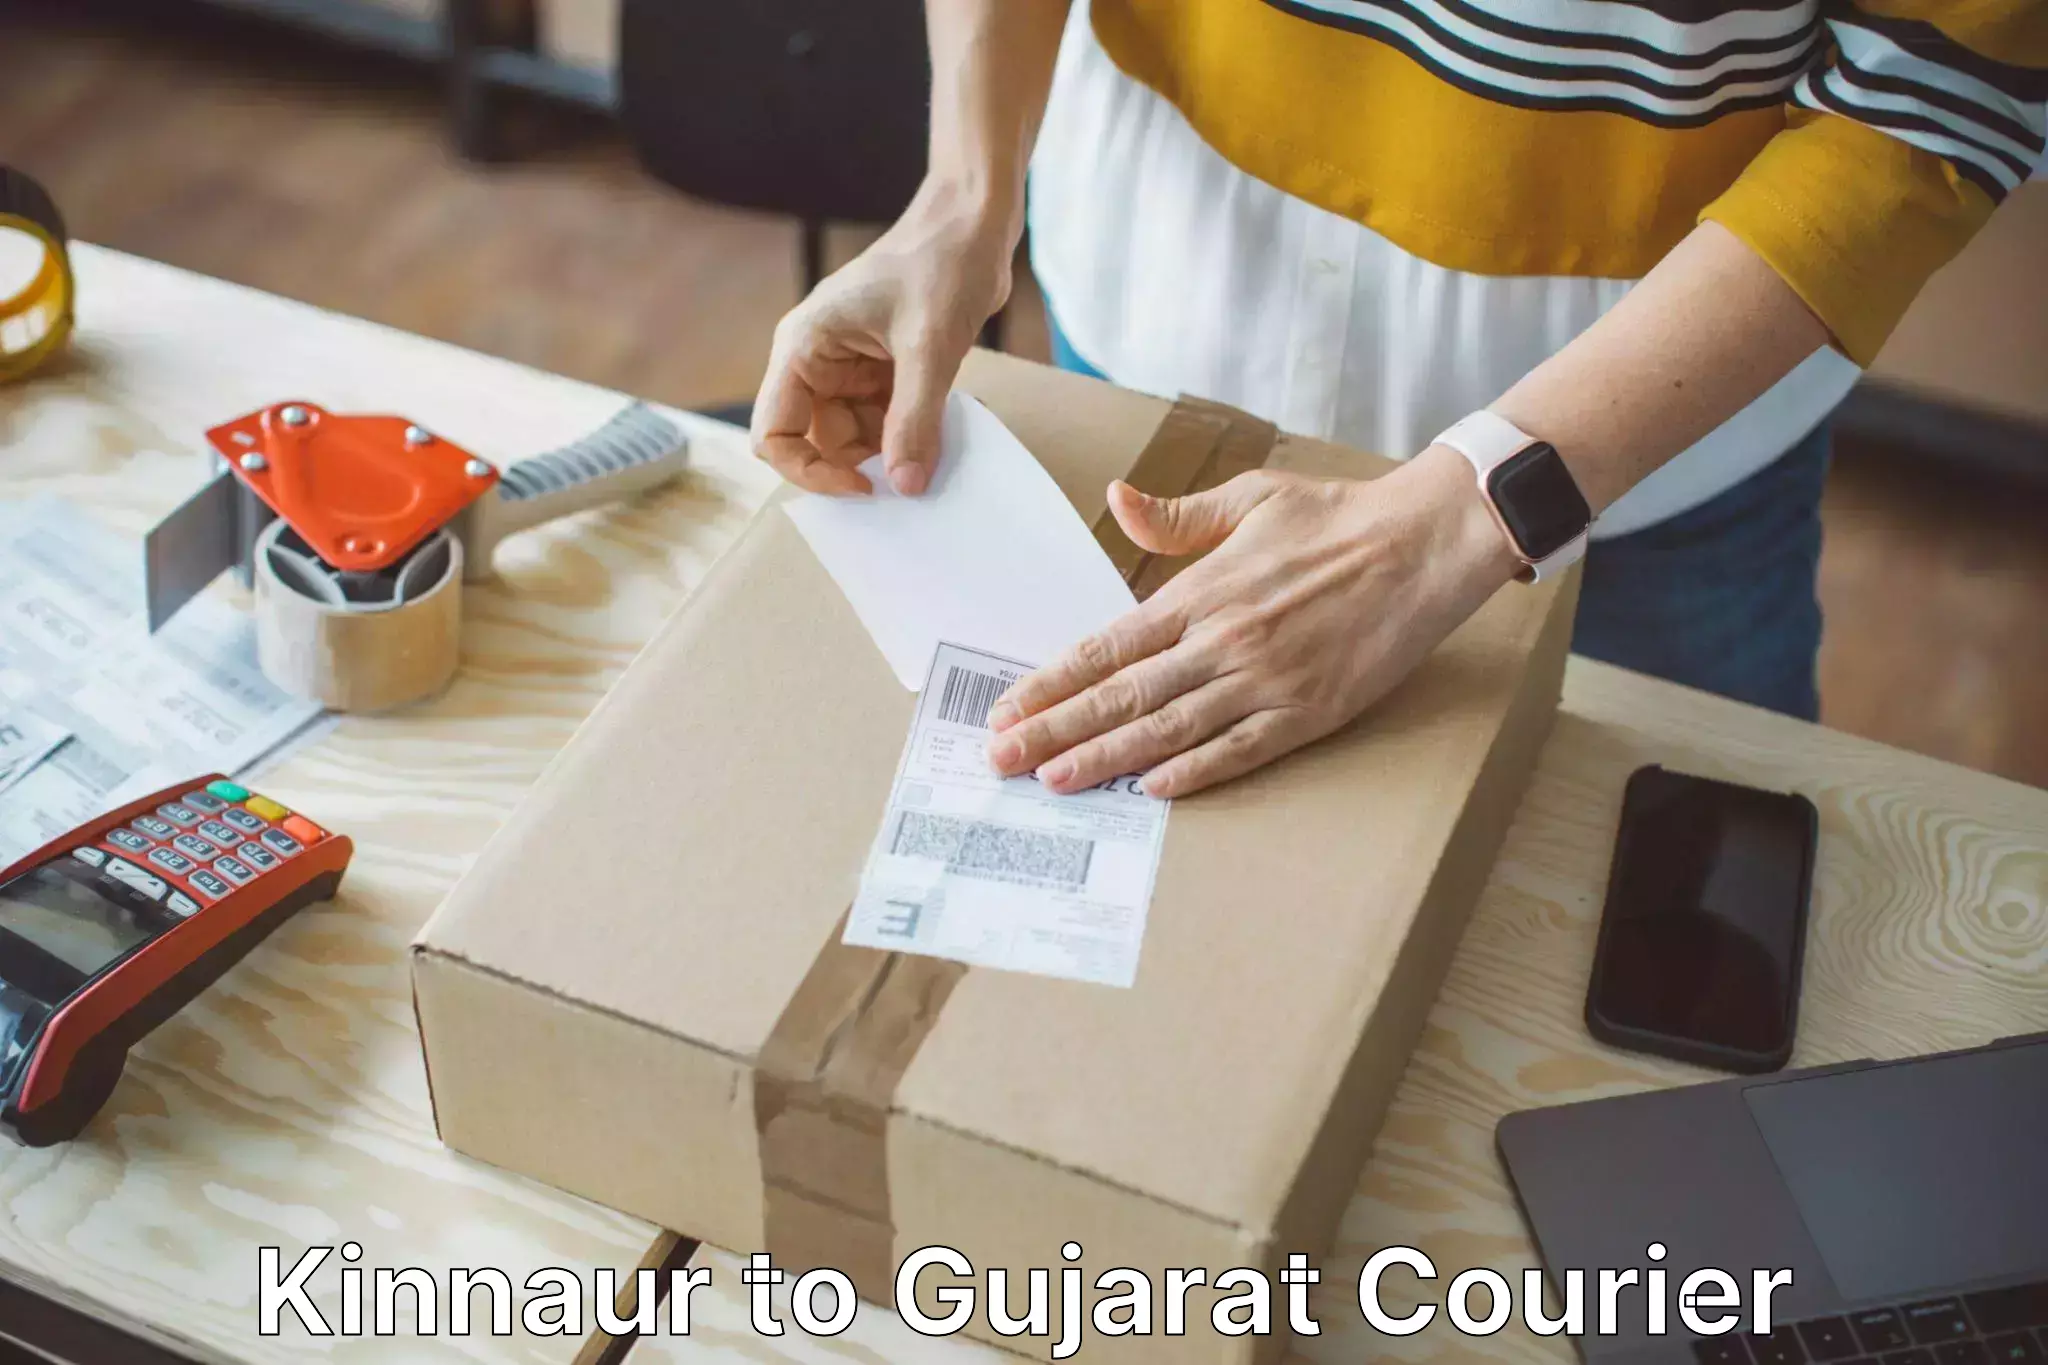 Luggage shipping specialists Kinnaur to Gujarat